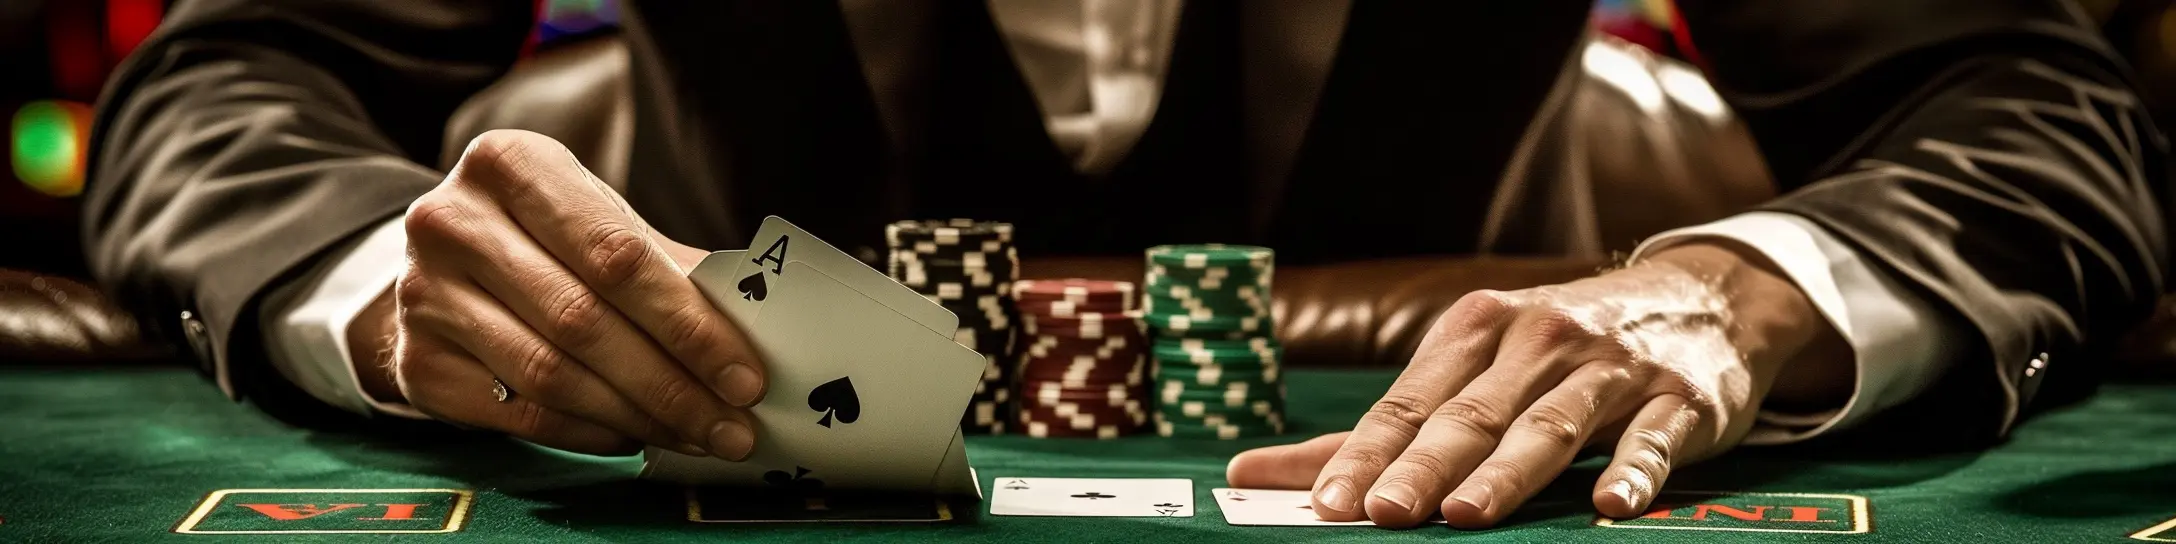 joueur de blackjack tenant carte as dans les mains au casino